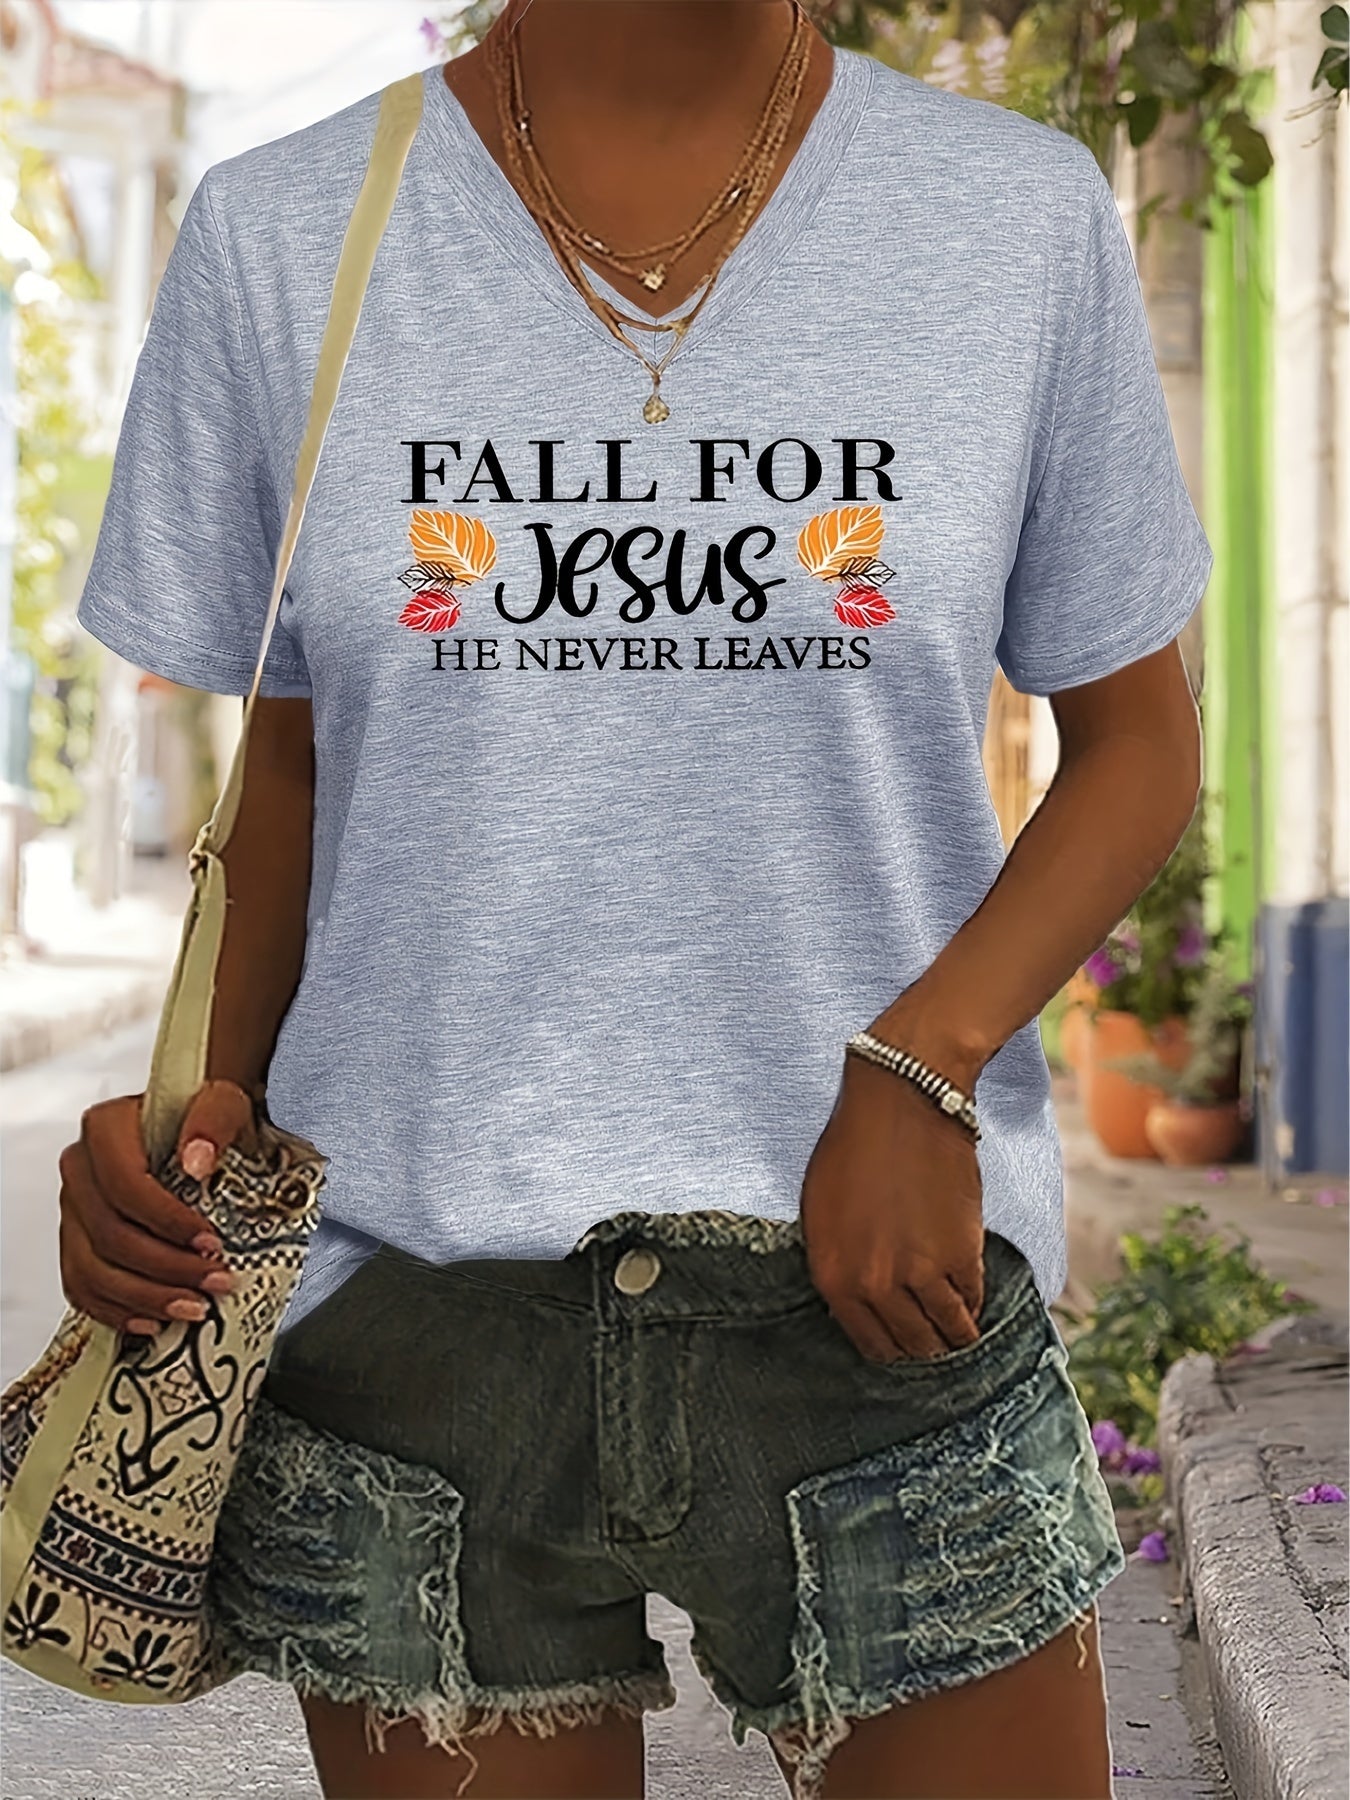 Fall For Jesus He Never Leaves Women's Christian V Neck T-Shirt claimedbygoddesigns